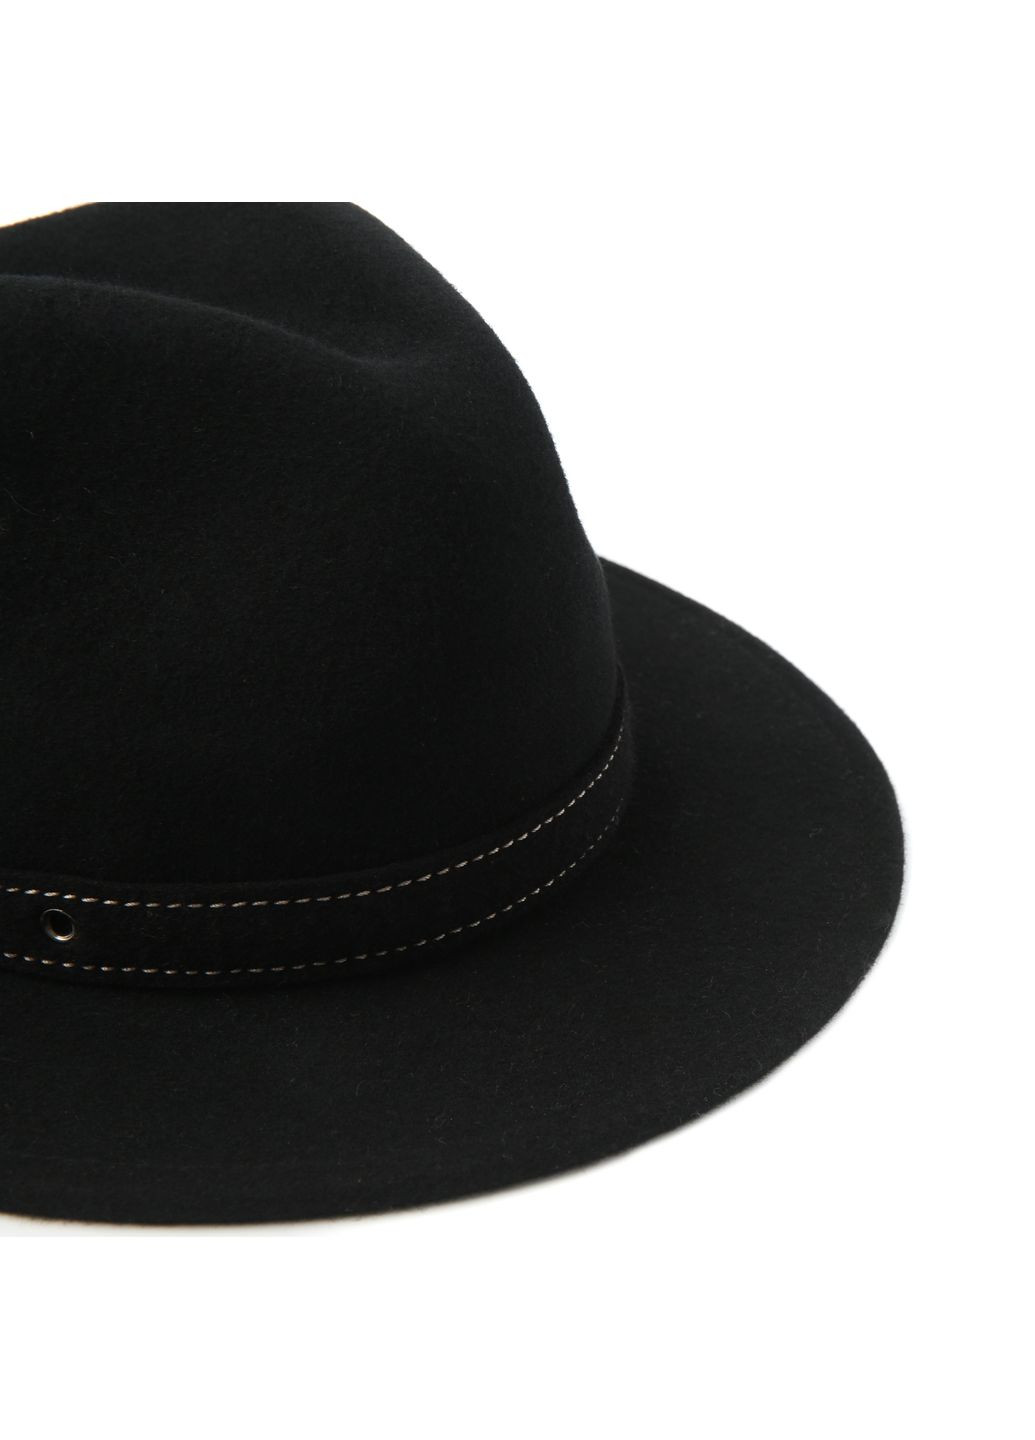 Шляпа федора женская с ремешком фетр черная LuckyLOOK 653-314 (289478344)